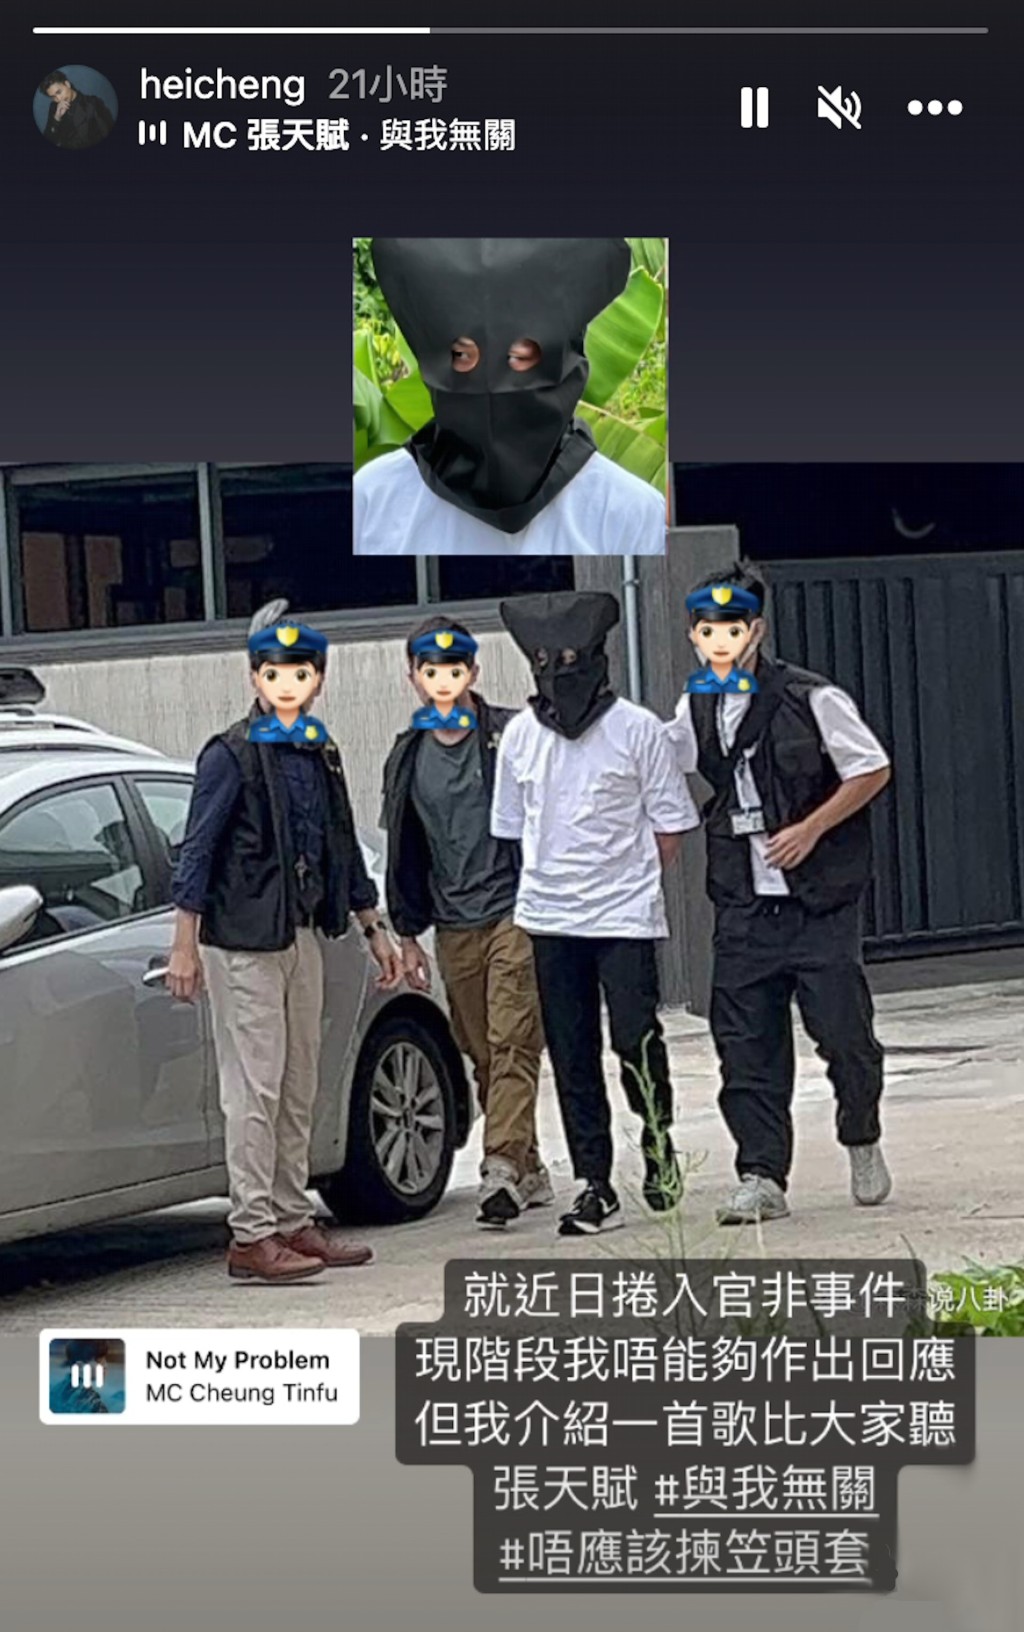 郑隽熹于IG Story贴出当日被笠头被捕的新闻照，并引用MC（张天赋）歌曲《与我无关》疑证自己清白。